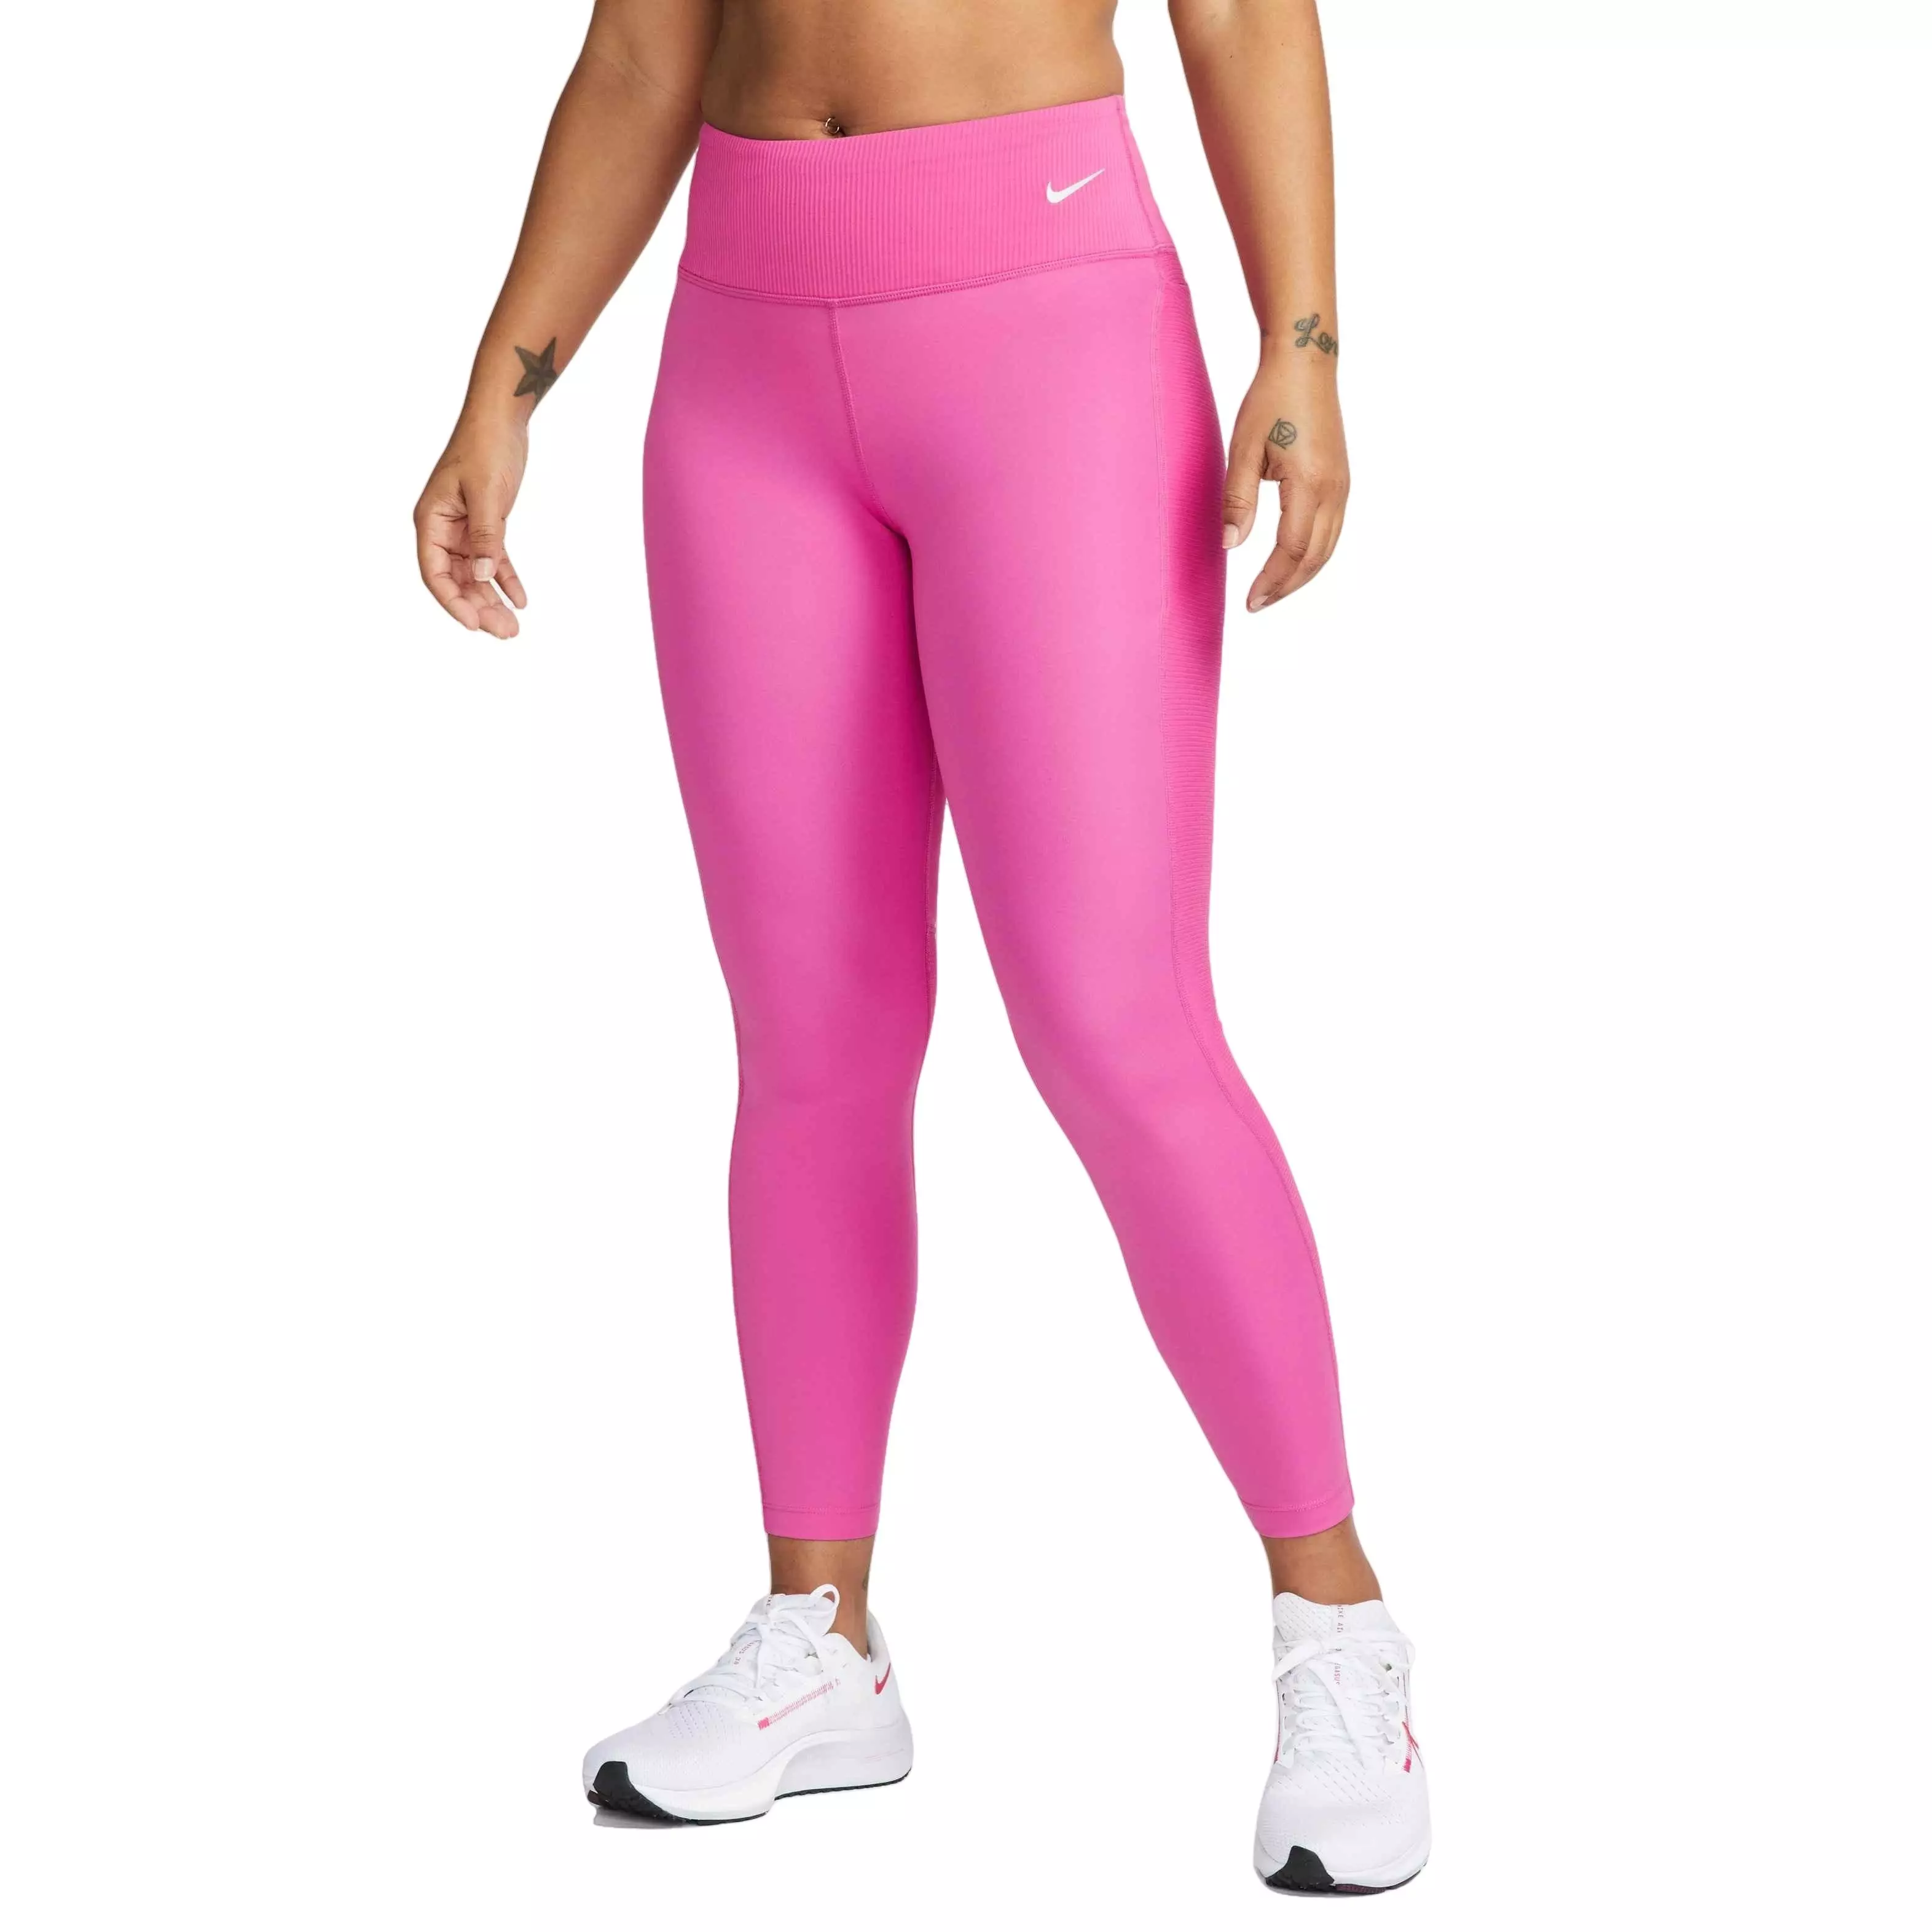 Nike Womens Dri-Fit Fast 7/8 Leggings - Pink